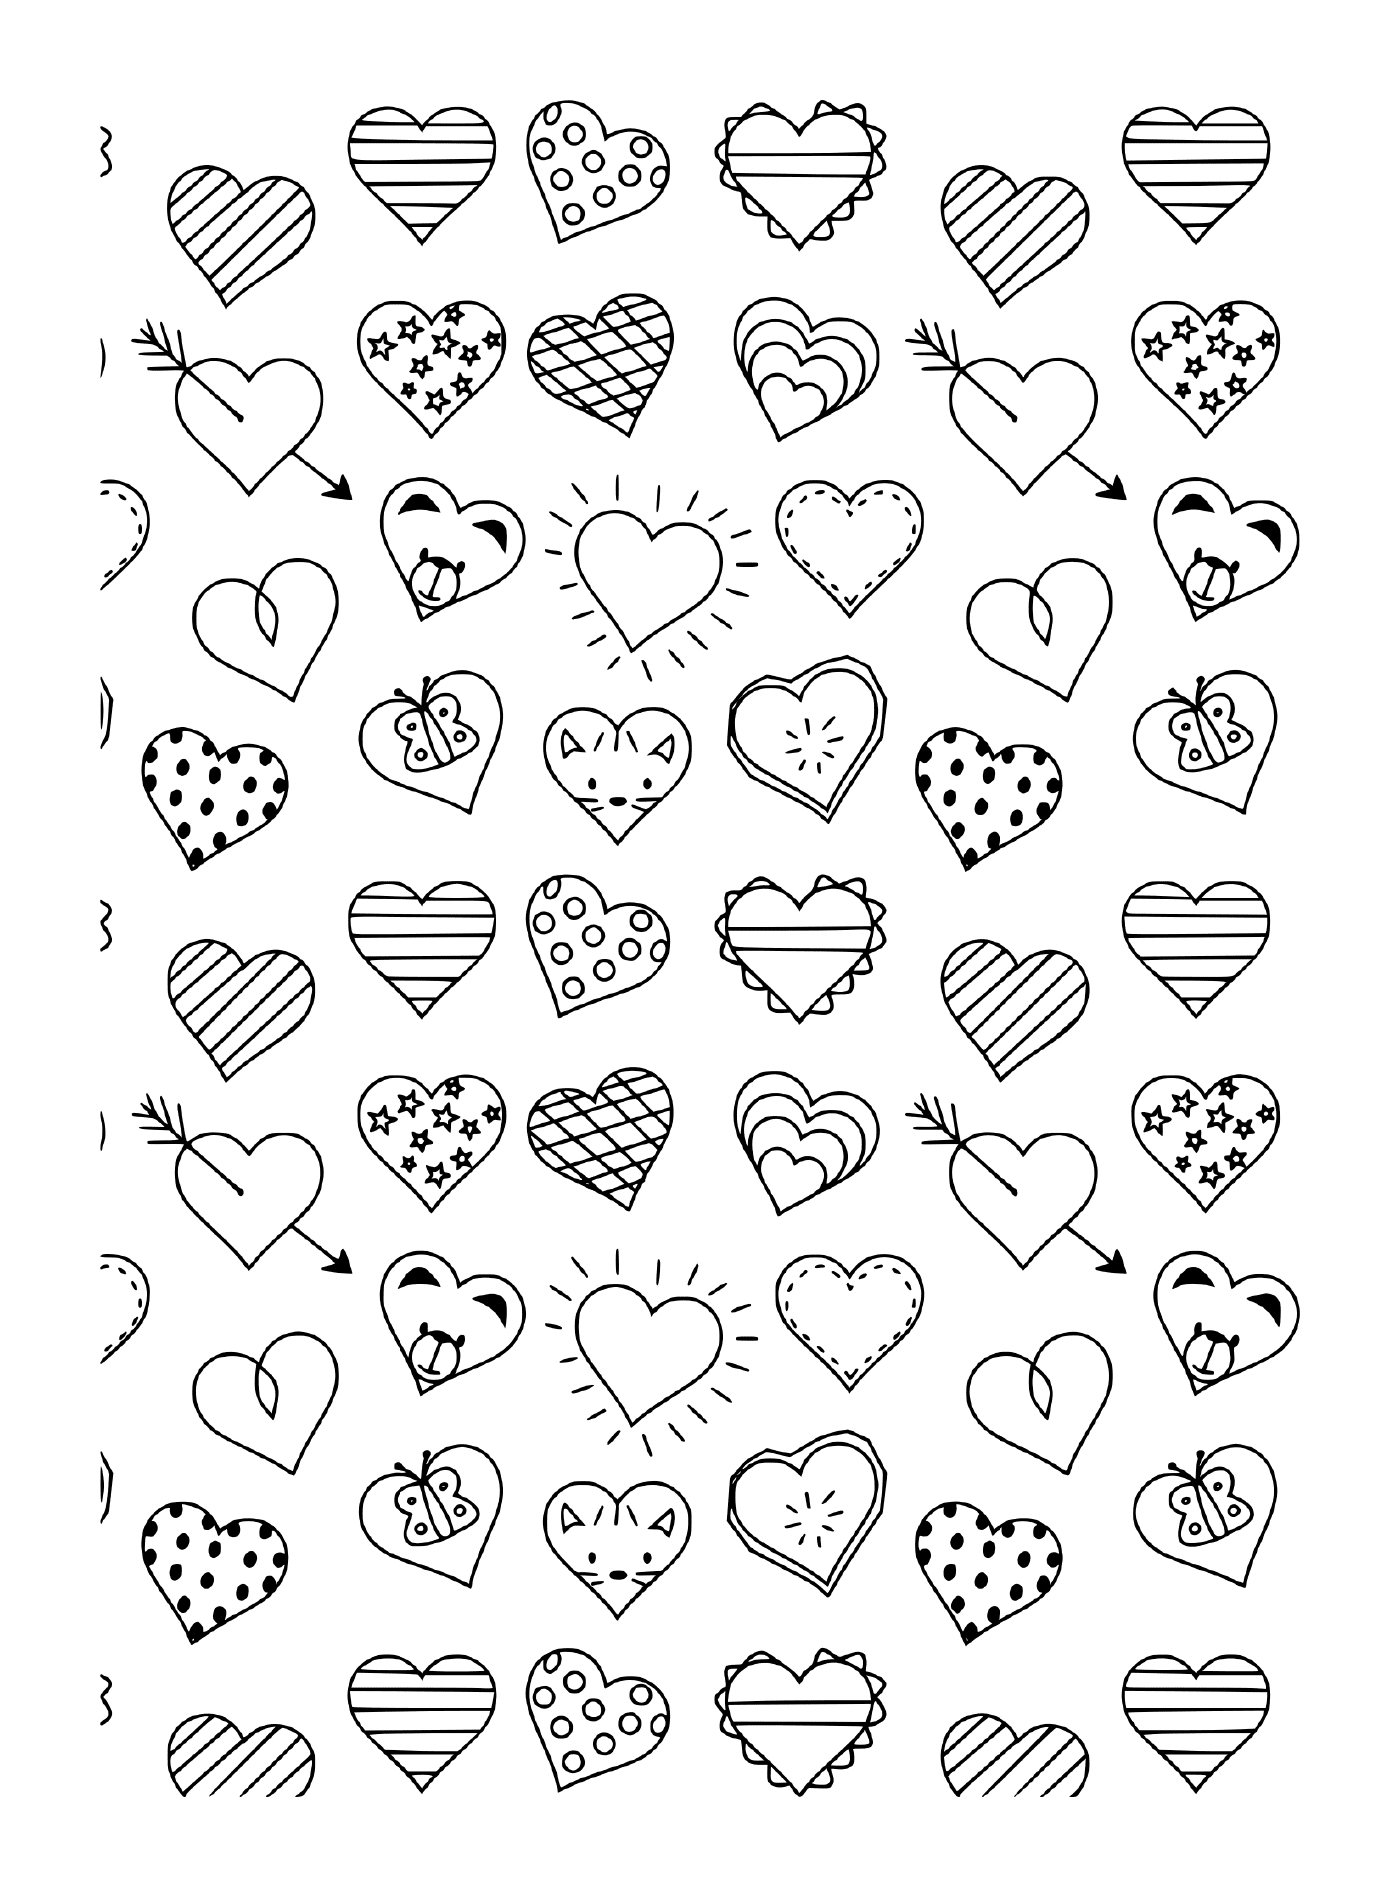   Un motif noir et blanc de différents cœurs et flèches 